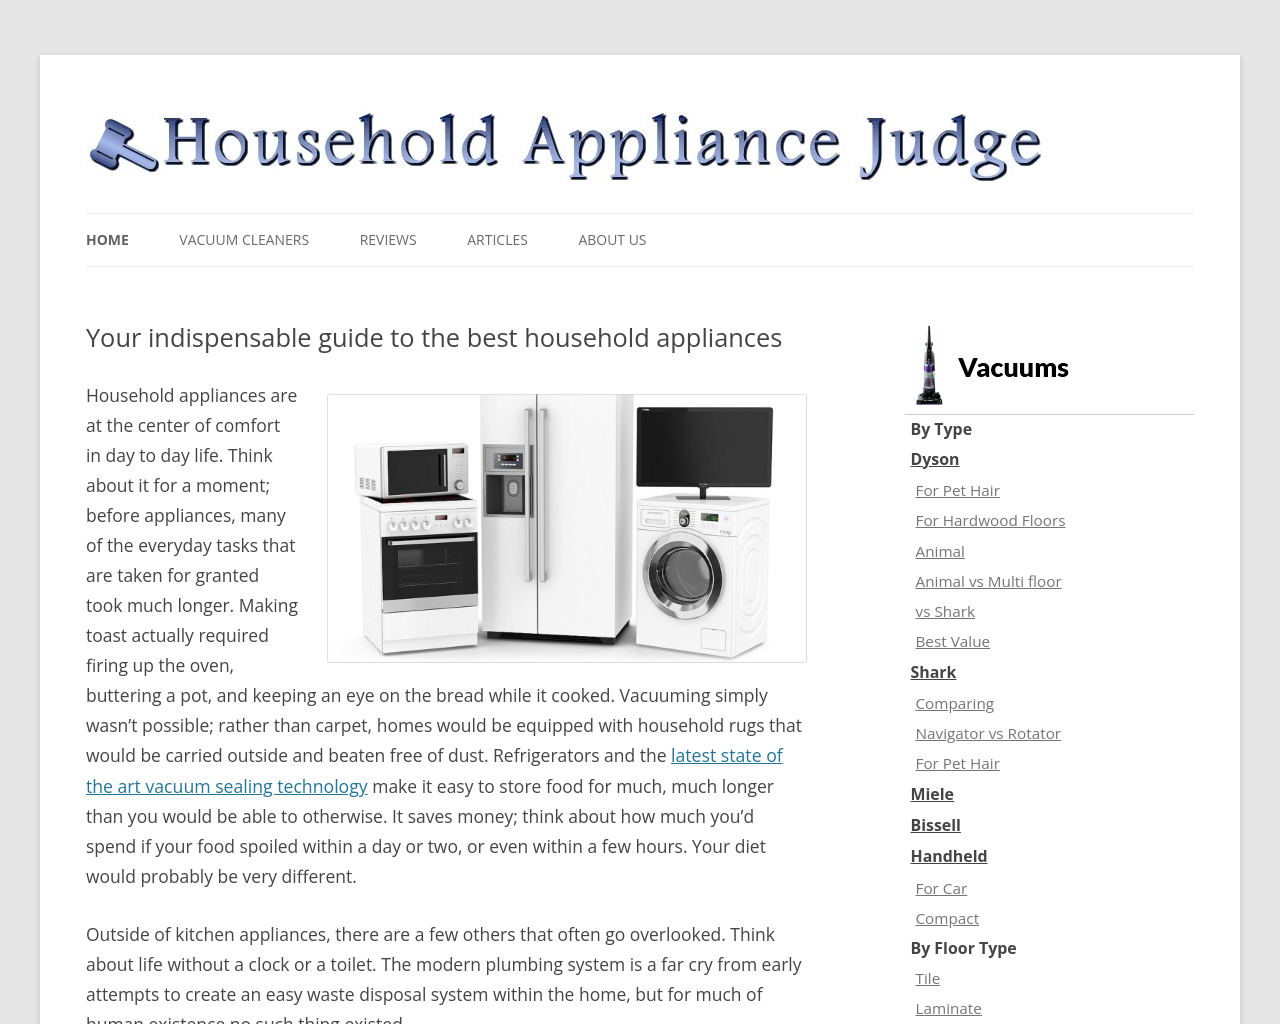 householdappliancejudge.com